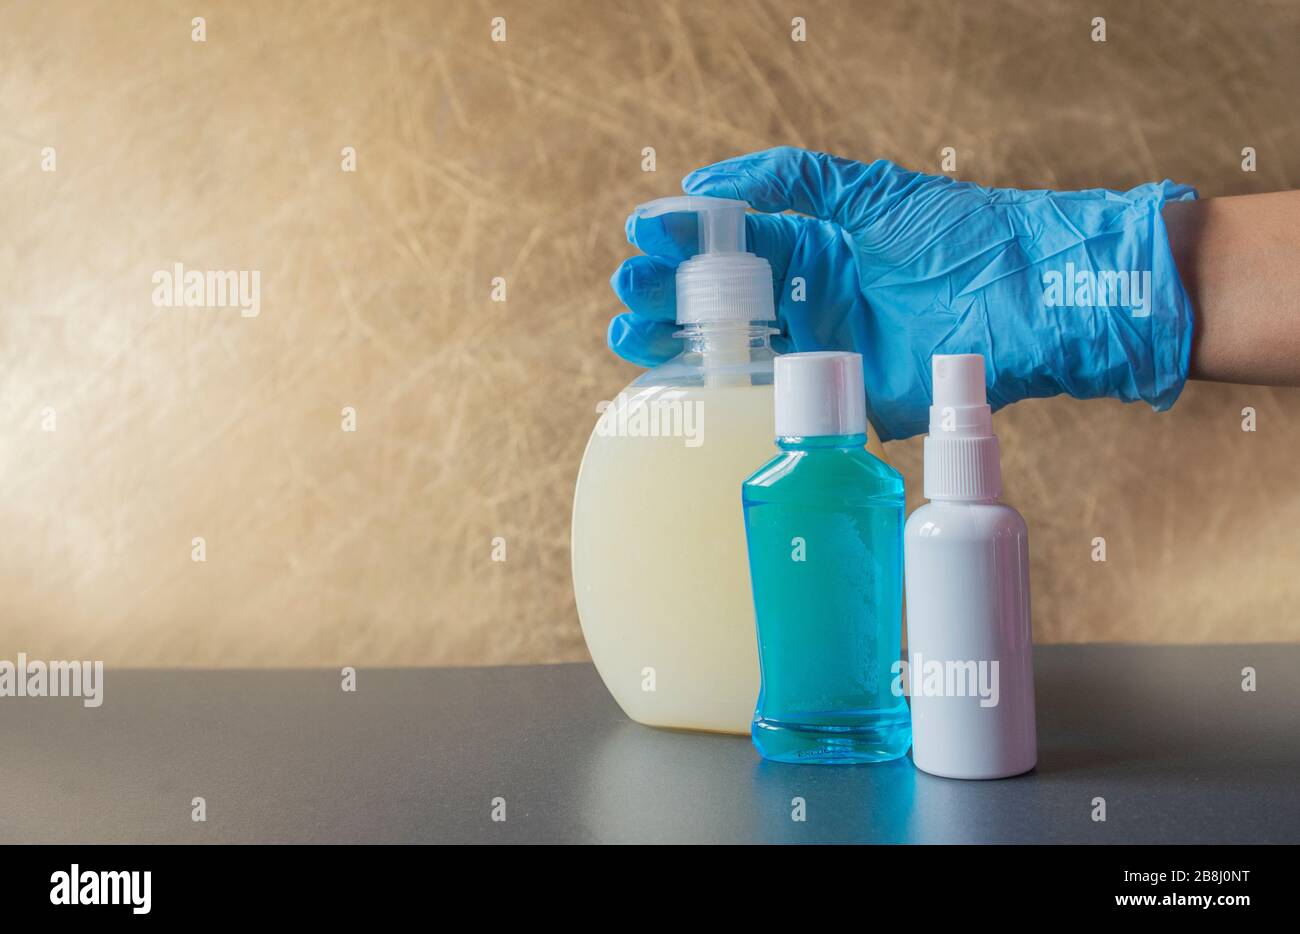 ragazza tiene in mano bottiglie con un antisettico con sapone liquido per la pulizia contro i batteri in guanti di gomma blu Foto Stock